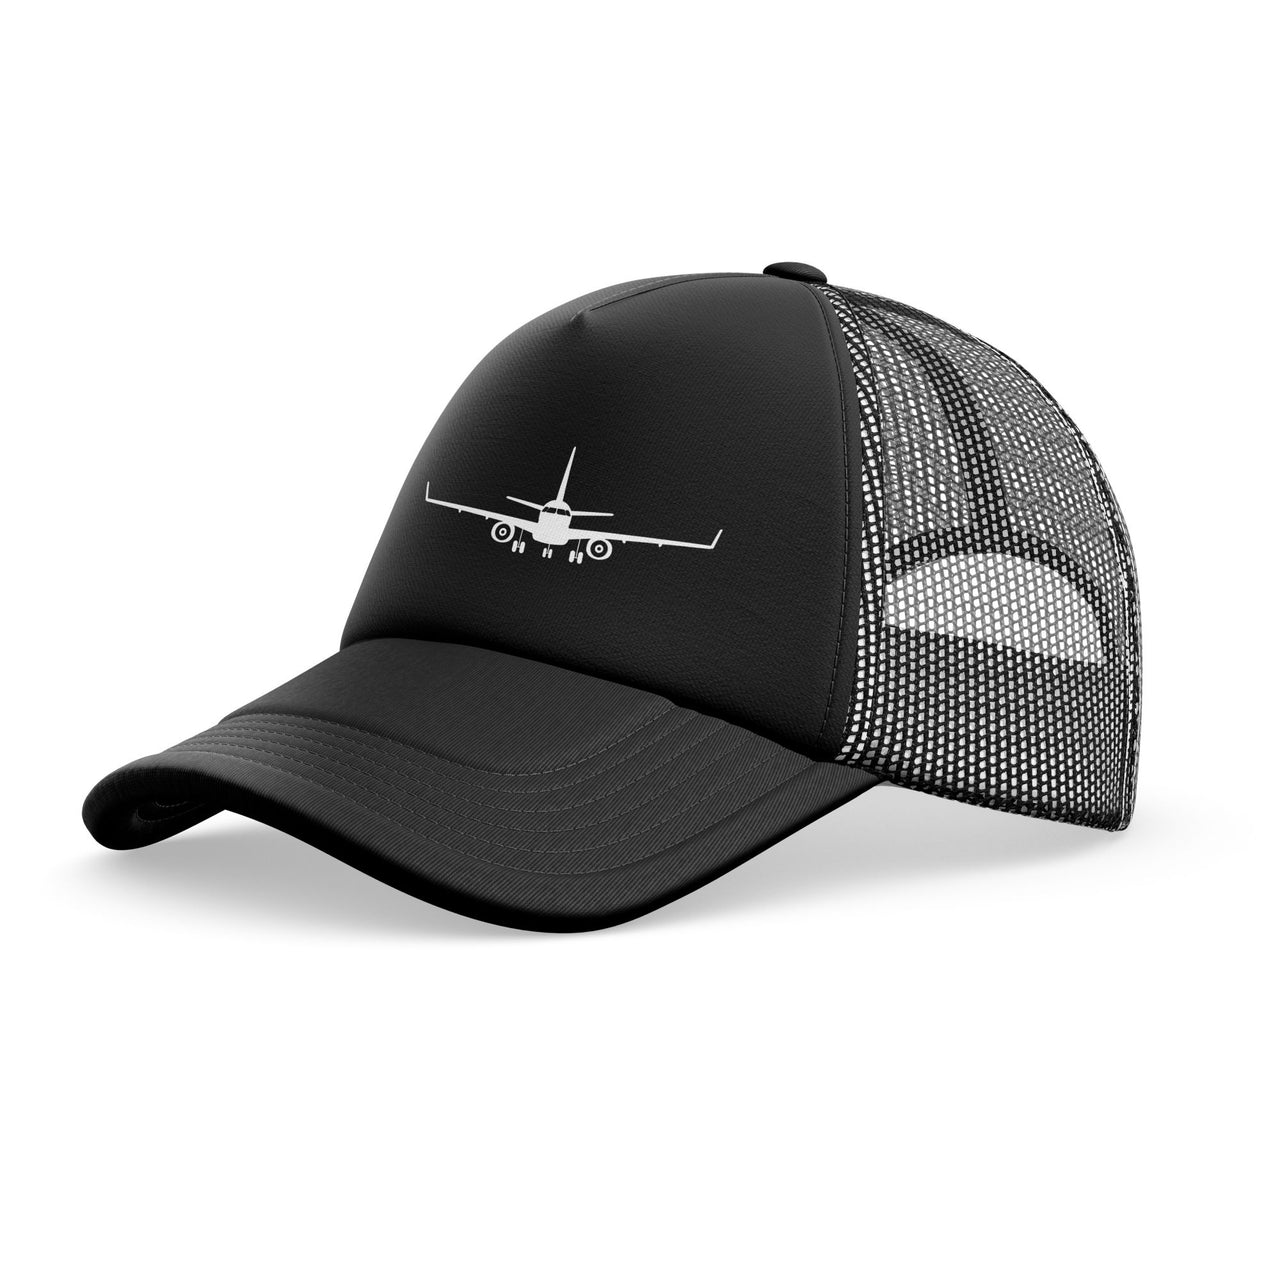 Embraer E-190 Silhouette Plane Designed Trucker Caps & Hats